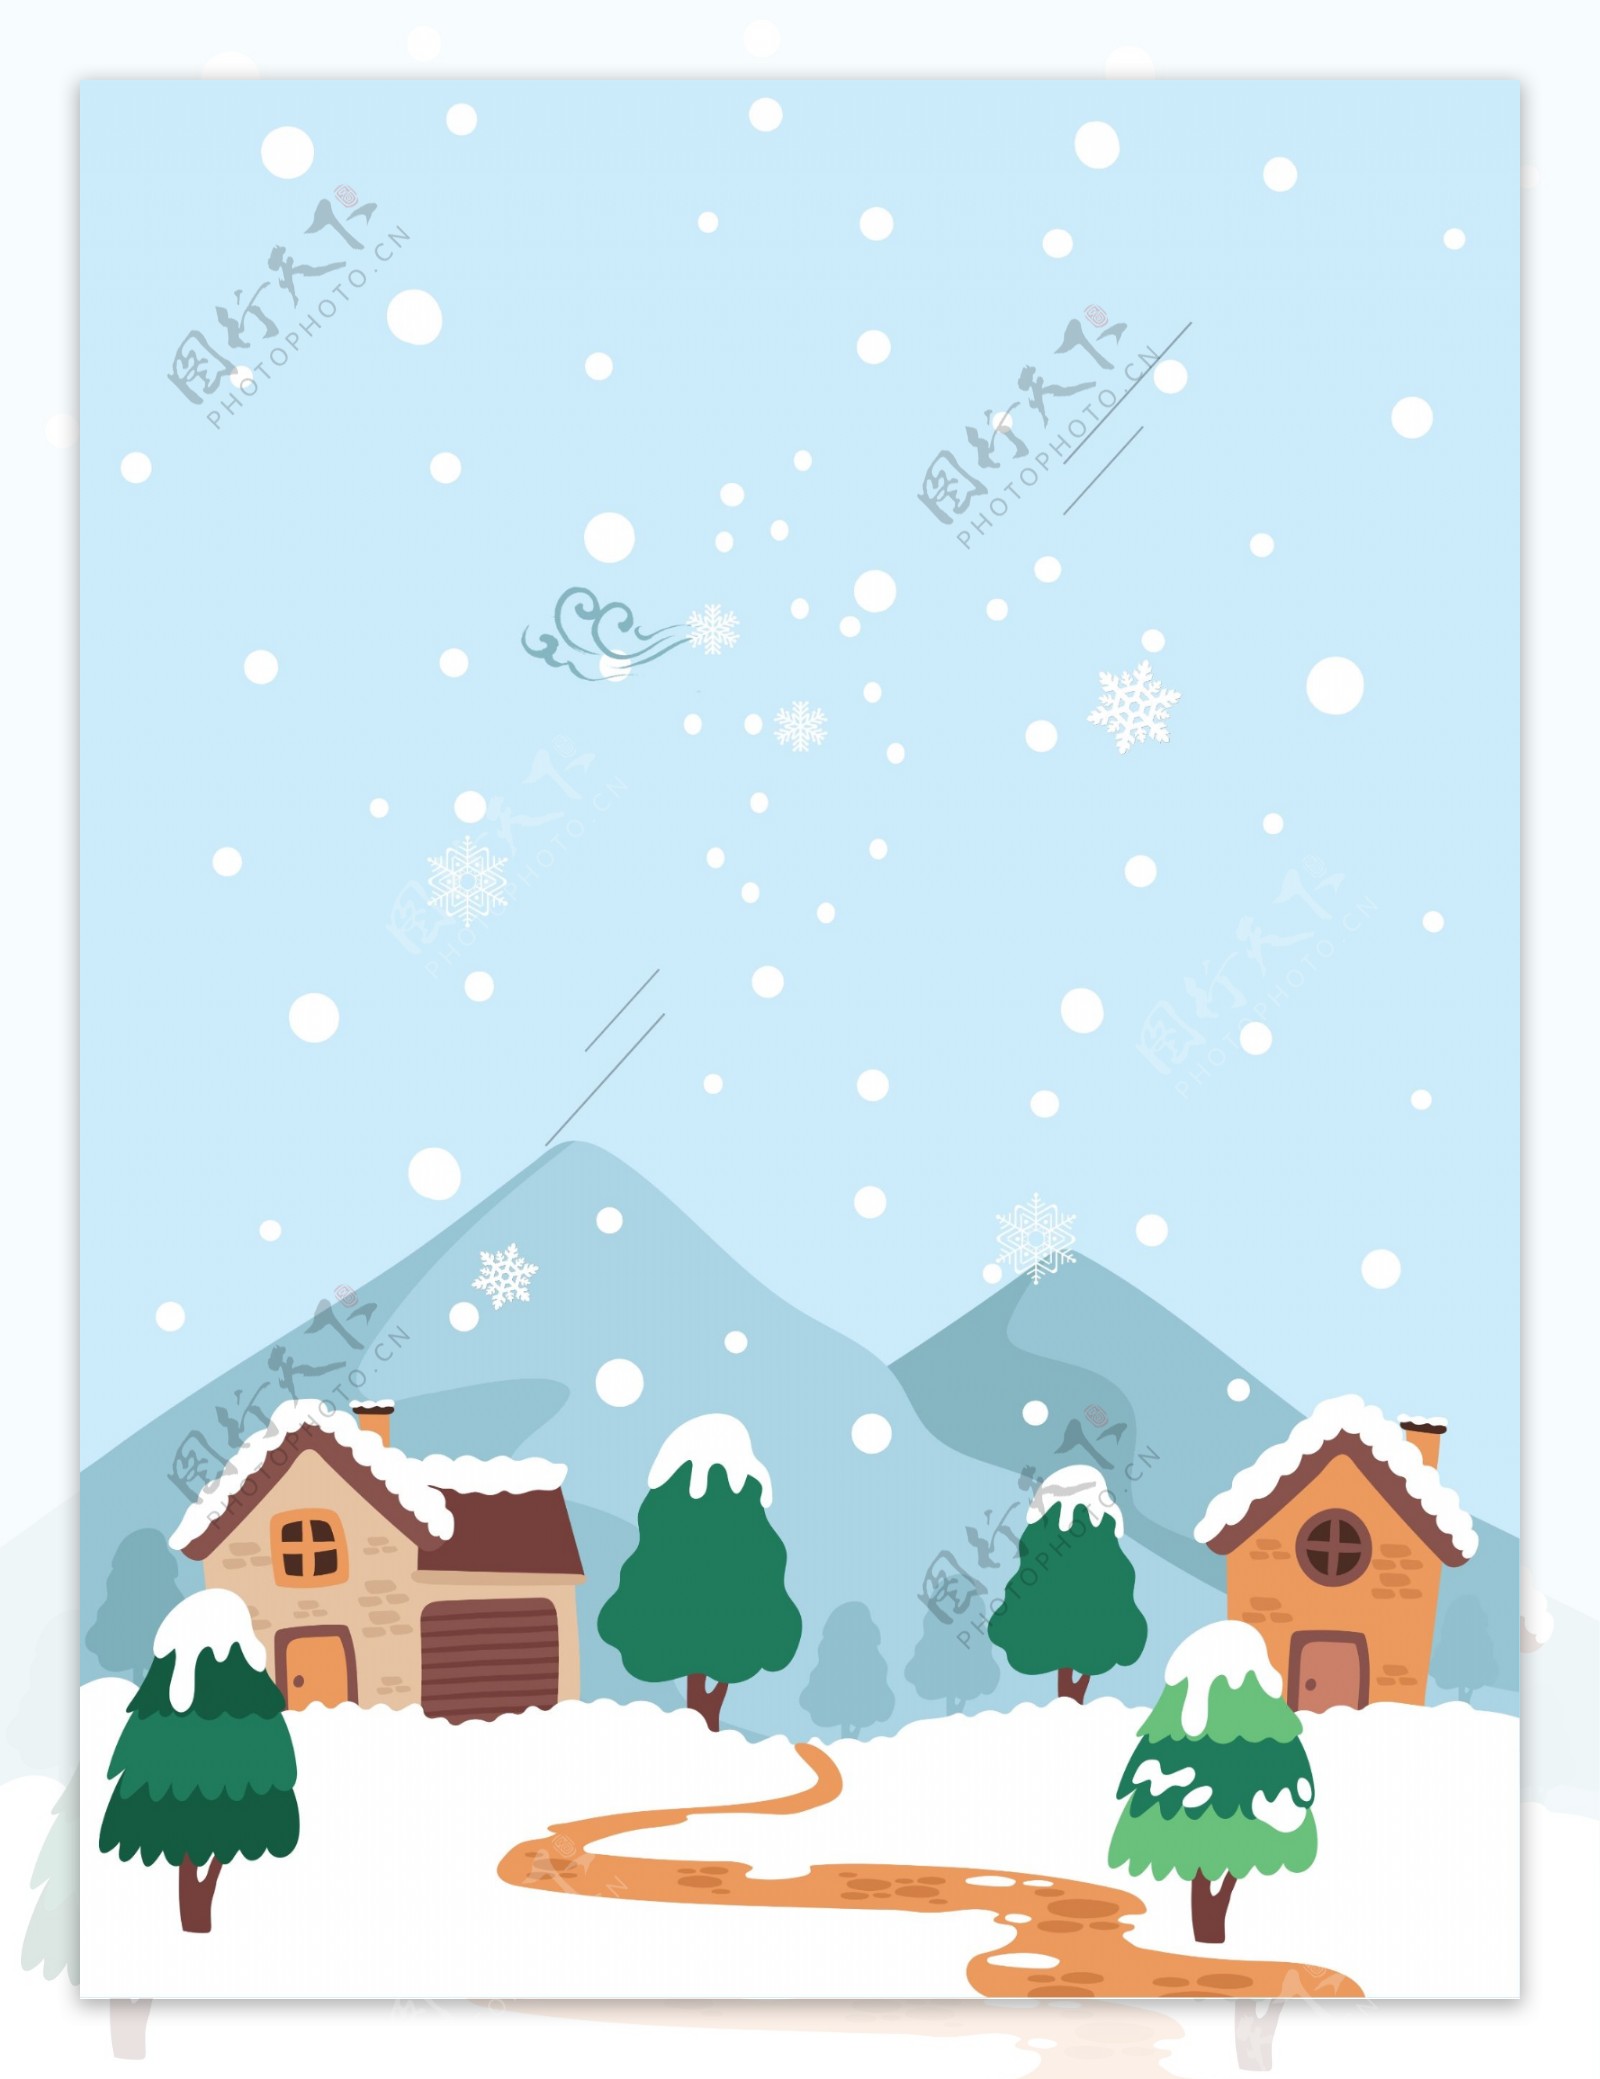 冬季手绘小清新雪景背景素材